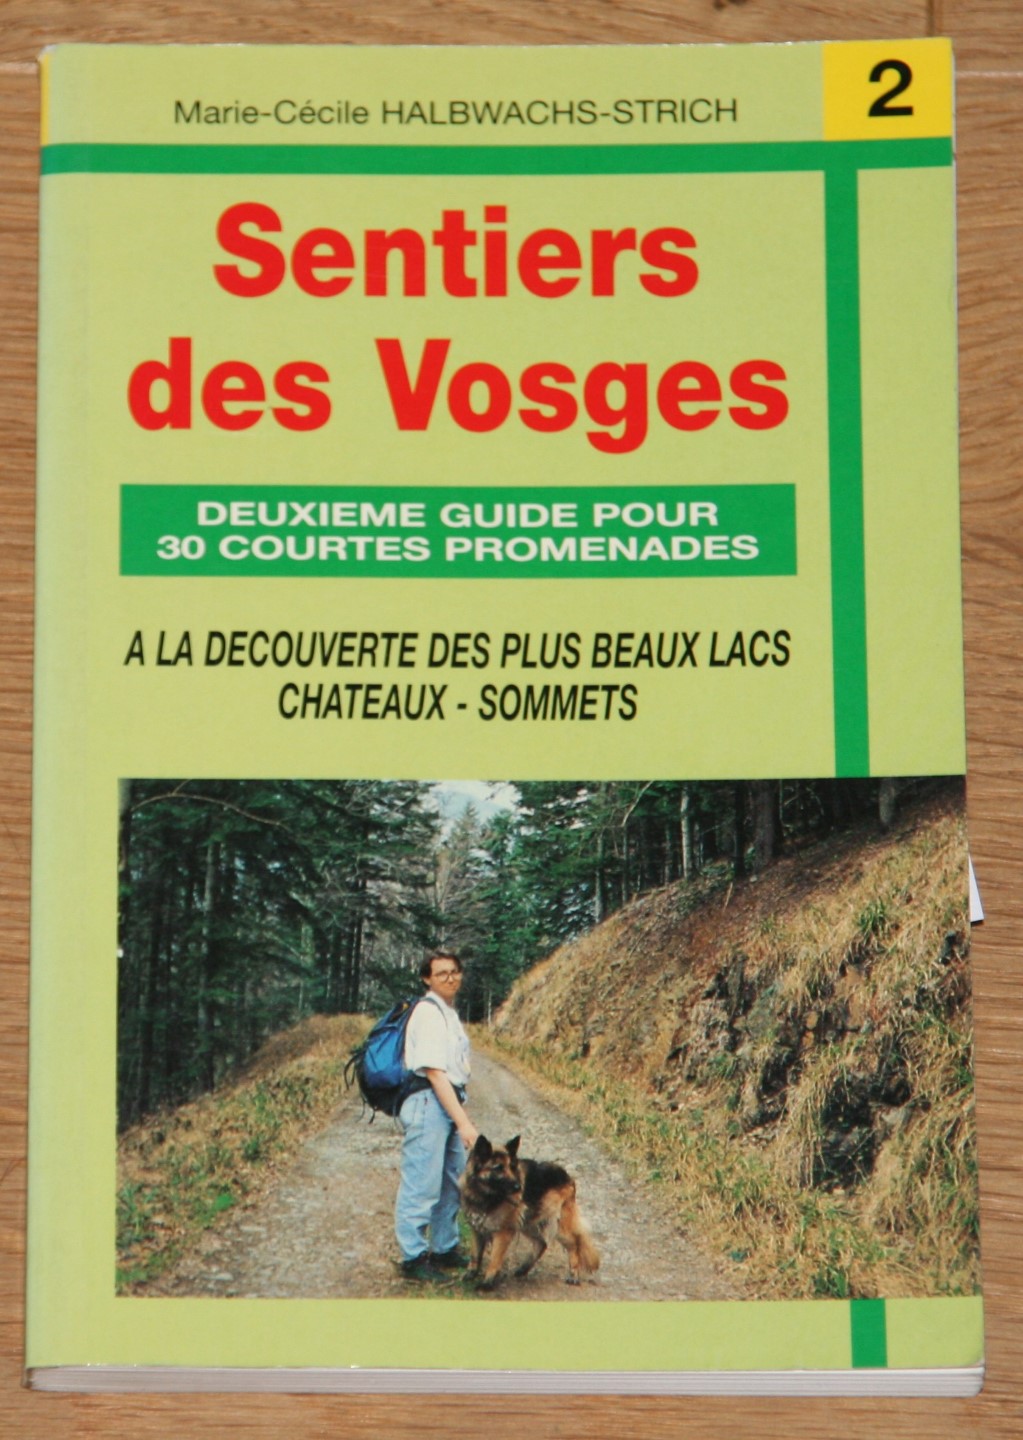 Halbwachs-Strich, Marie-Cécile: Sentiers des Vosges. Deuxieme Guide Pour 30 Courtes Promenades.